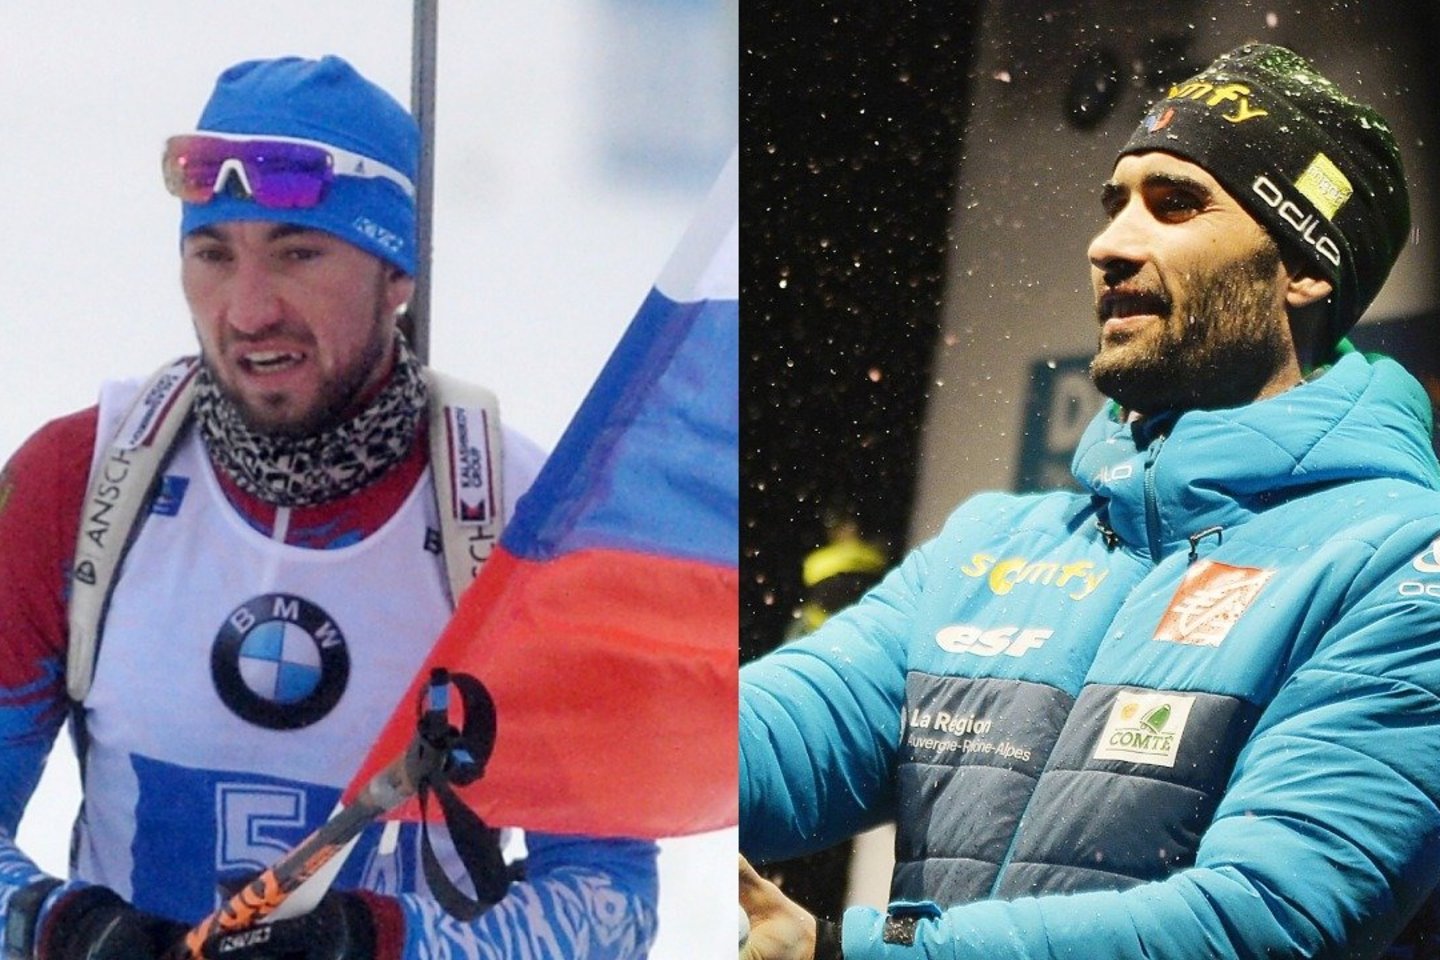 Rusija apskundė Tarptautinei biatlonininkų sąjungai (IBU) Prancūzijos sportininką Martiną Fourcade’ą (dešinėje) už jo pasisakymą prieš rusą Aleksandrą Loginovą (kairėje), kuris anksčiau buvo diskvalifikuotas dėl dopingo vartojimo.<br>Scanpix nuotr.